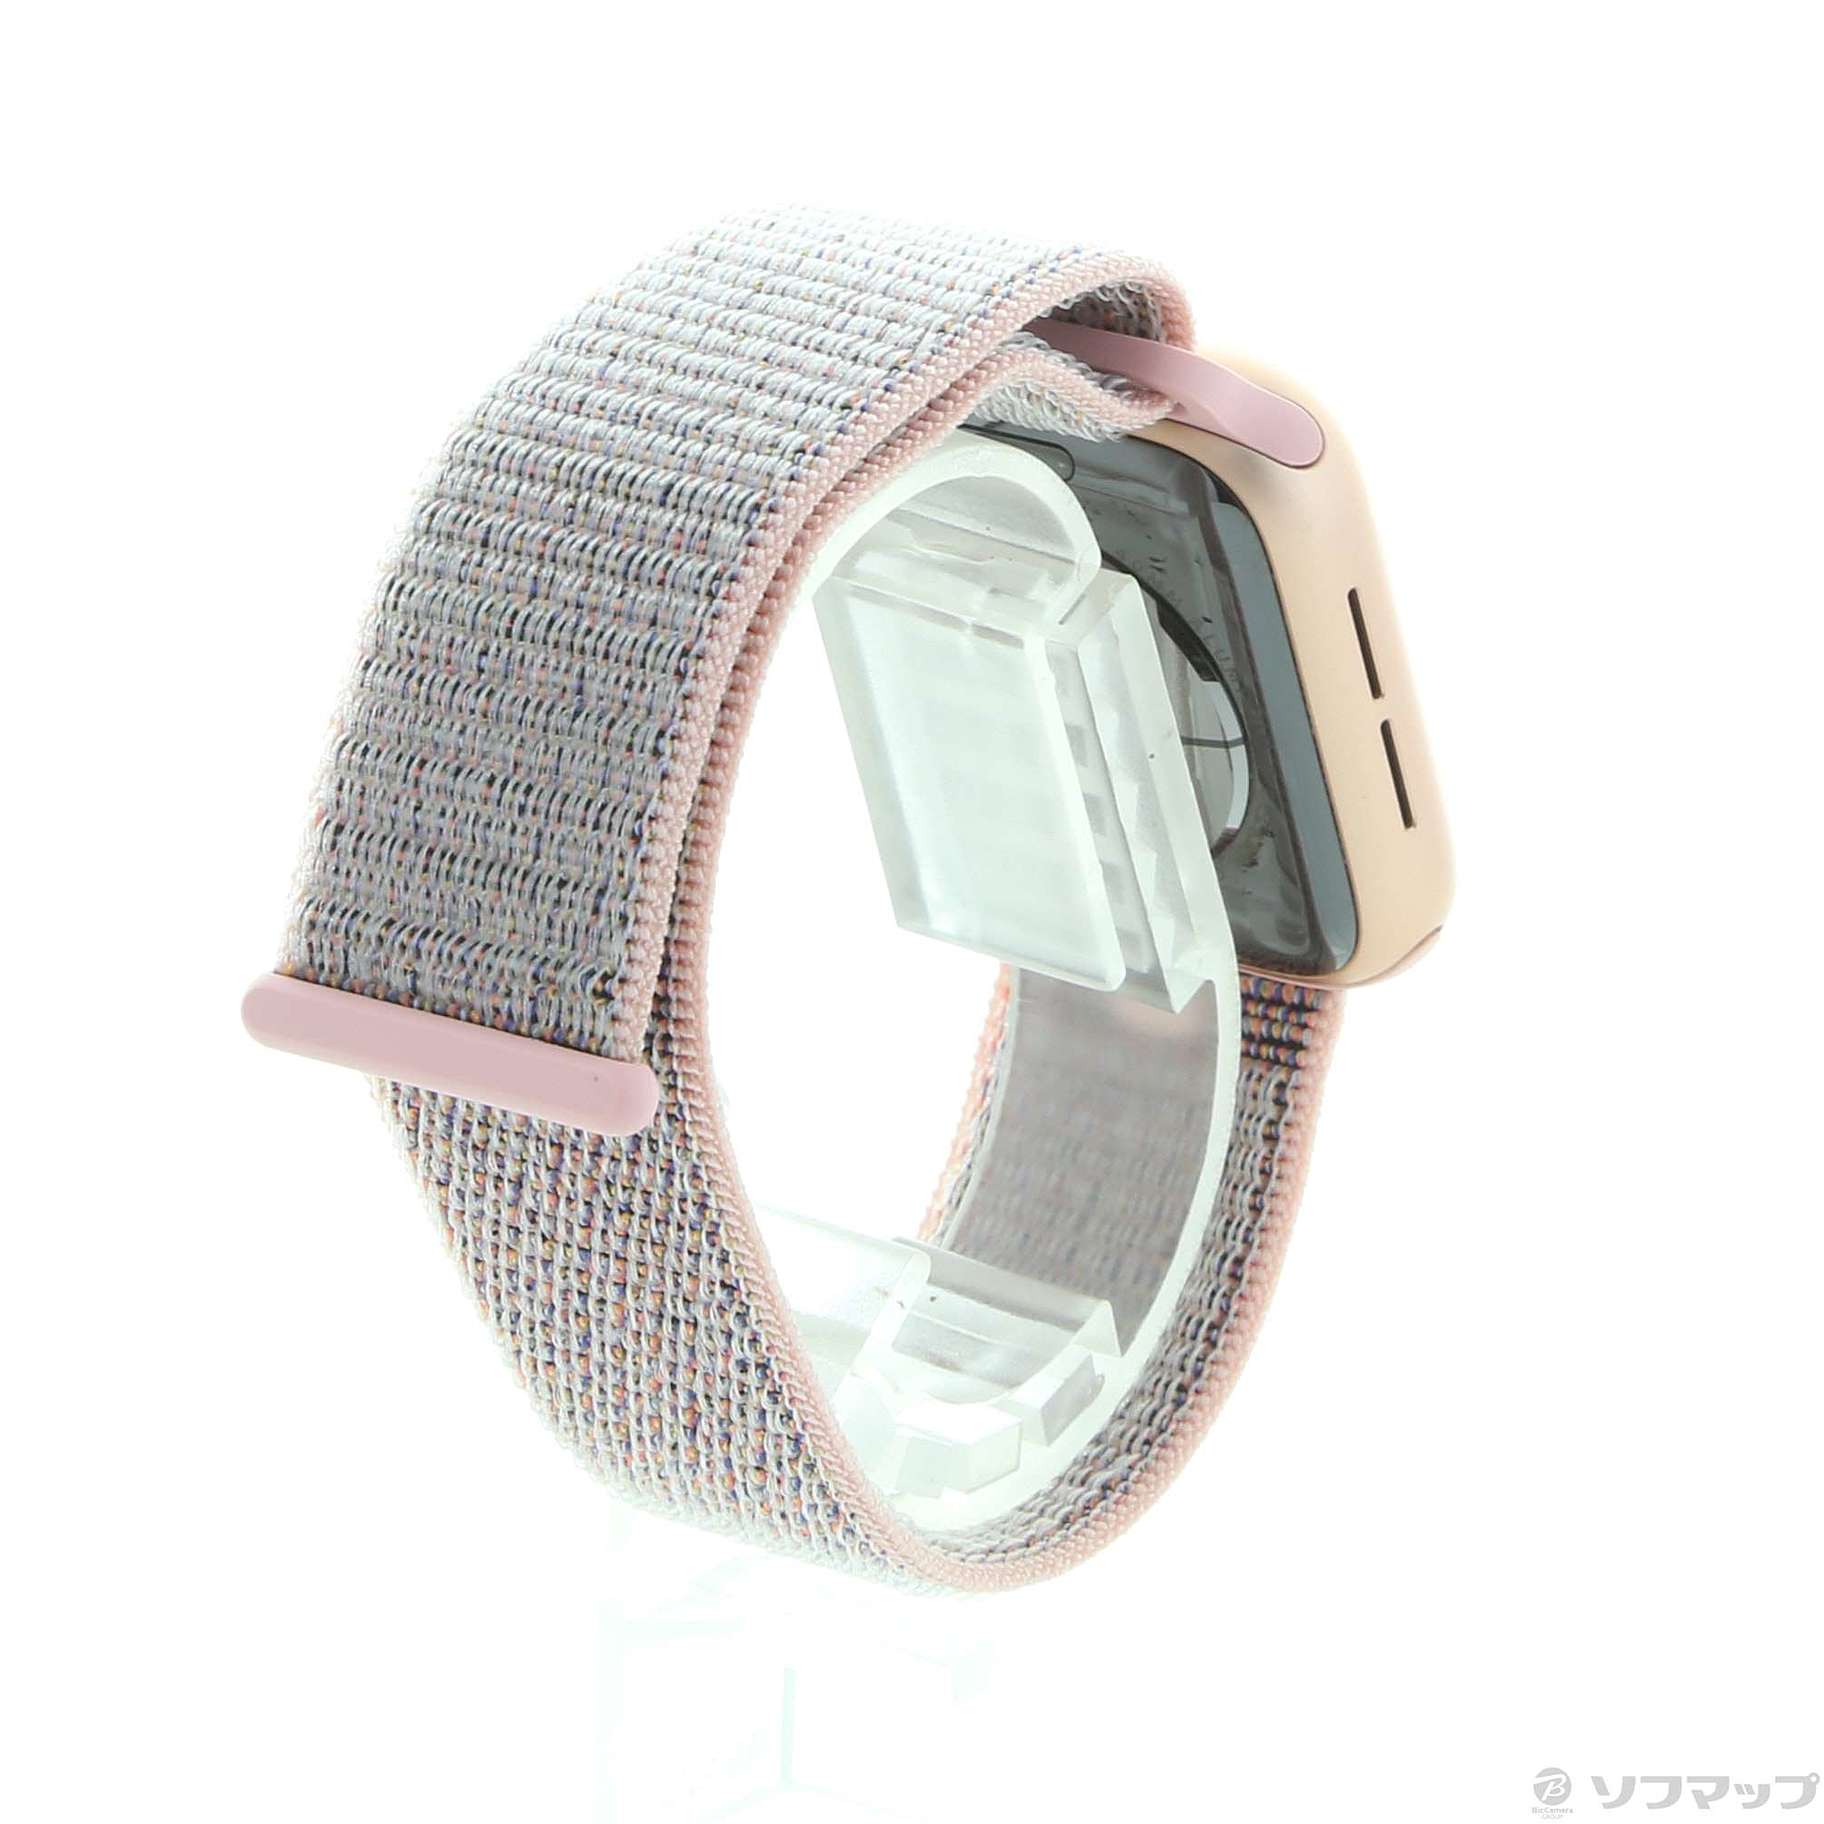 Apple アップル Apple Watch Series 4 Gps 40mm ゴールドアルミニウムケース ピンクサンドスポーツループ 291 Ud ソフマップ デジタルコレクション